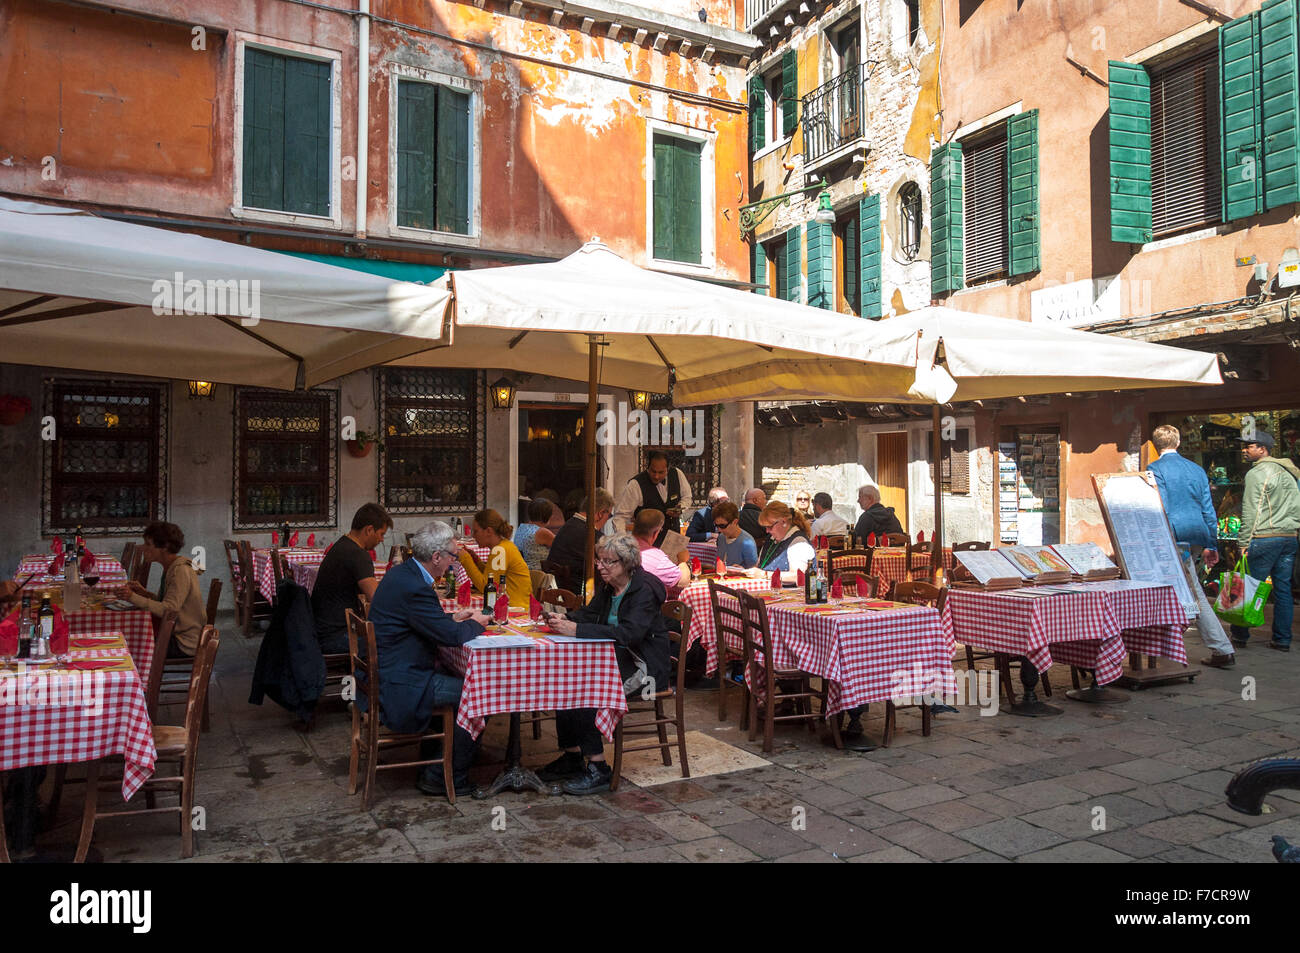 Osteria No1, Campiello San Zulian, Venice, Italy Stock Photo